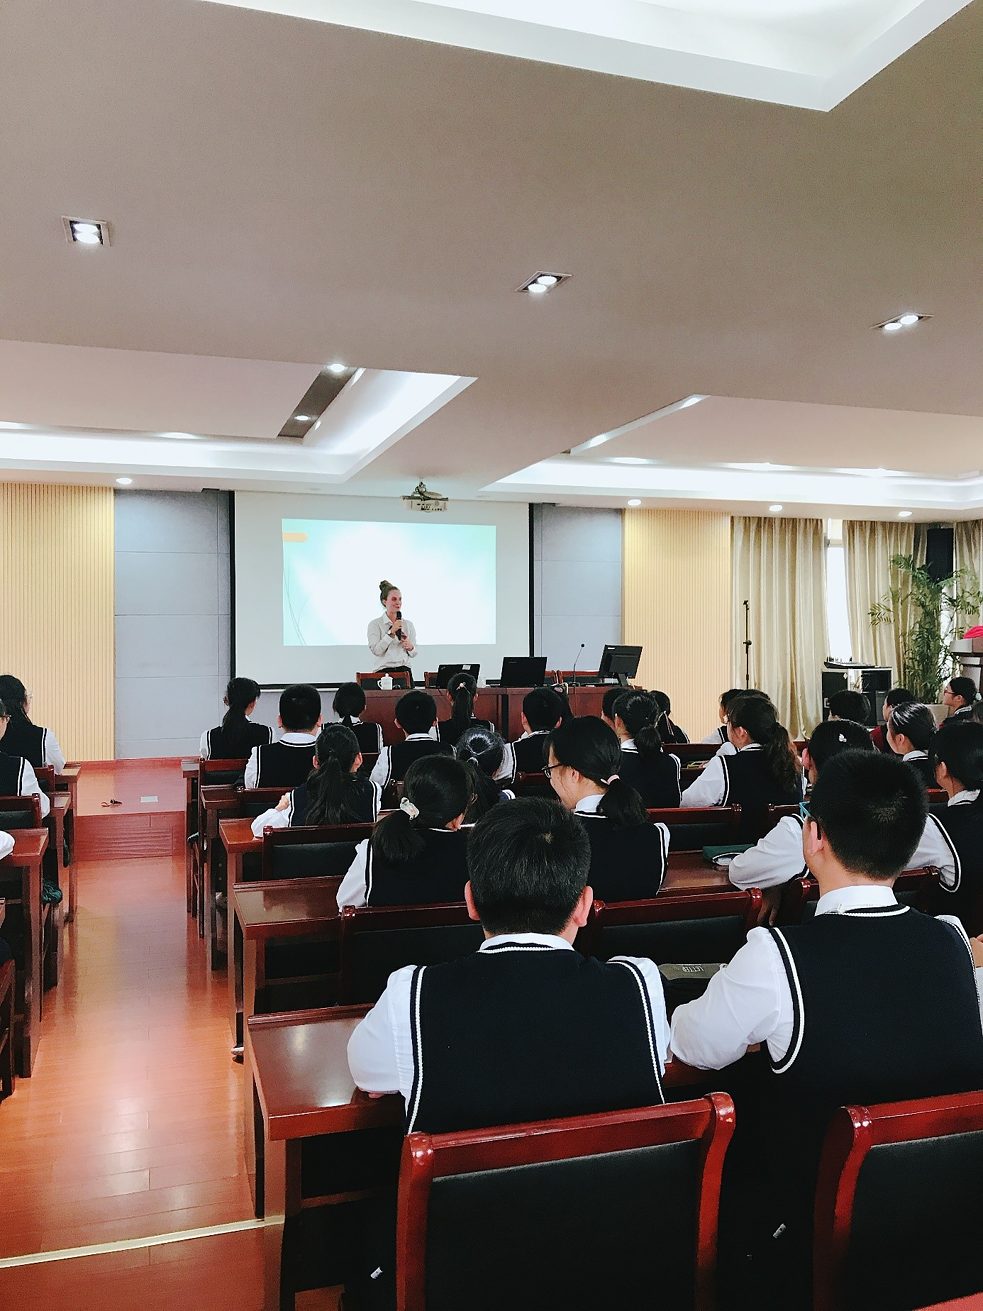 Zweiter Vortrag an der Suzhou Yangshan Experimental School